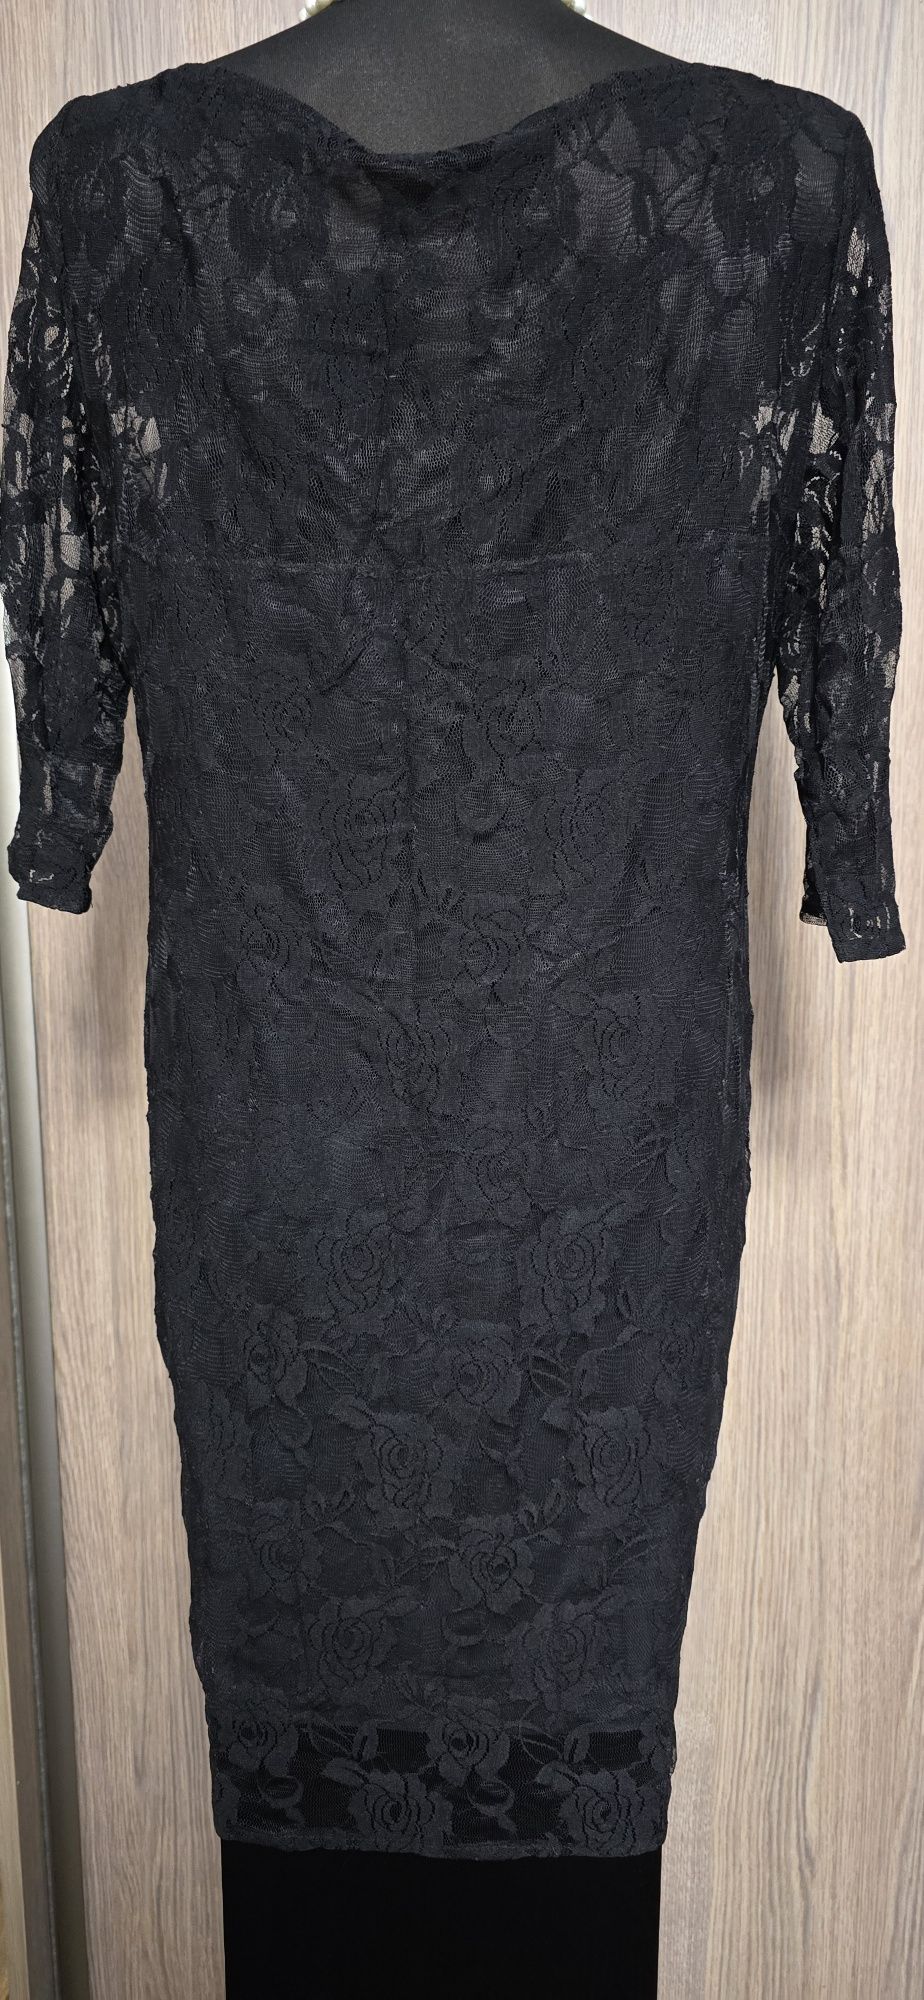 Nowa -- Czarna Koronkowa Sukienka -- Bardzo Elastyczna - Roz. XL/42/14